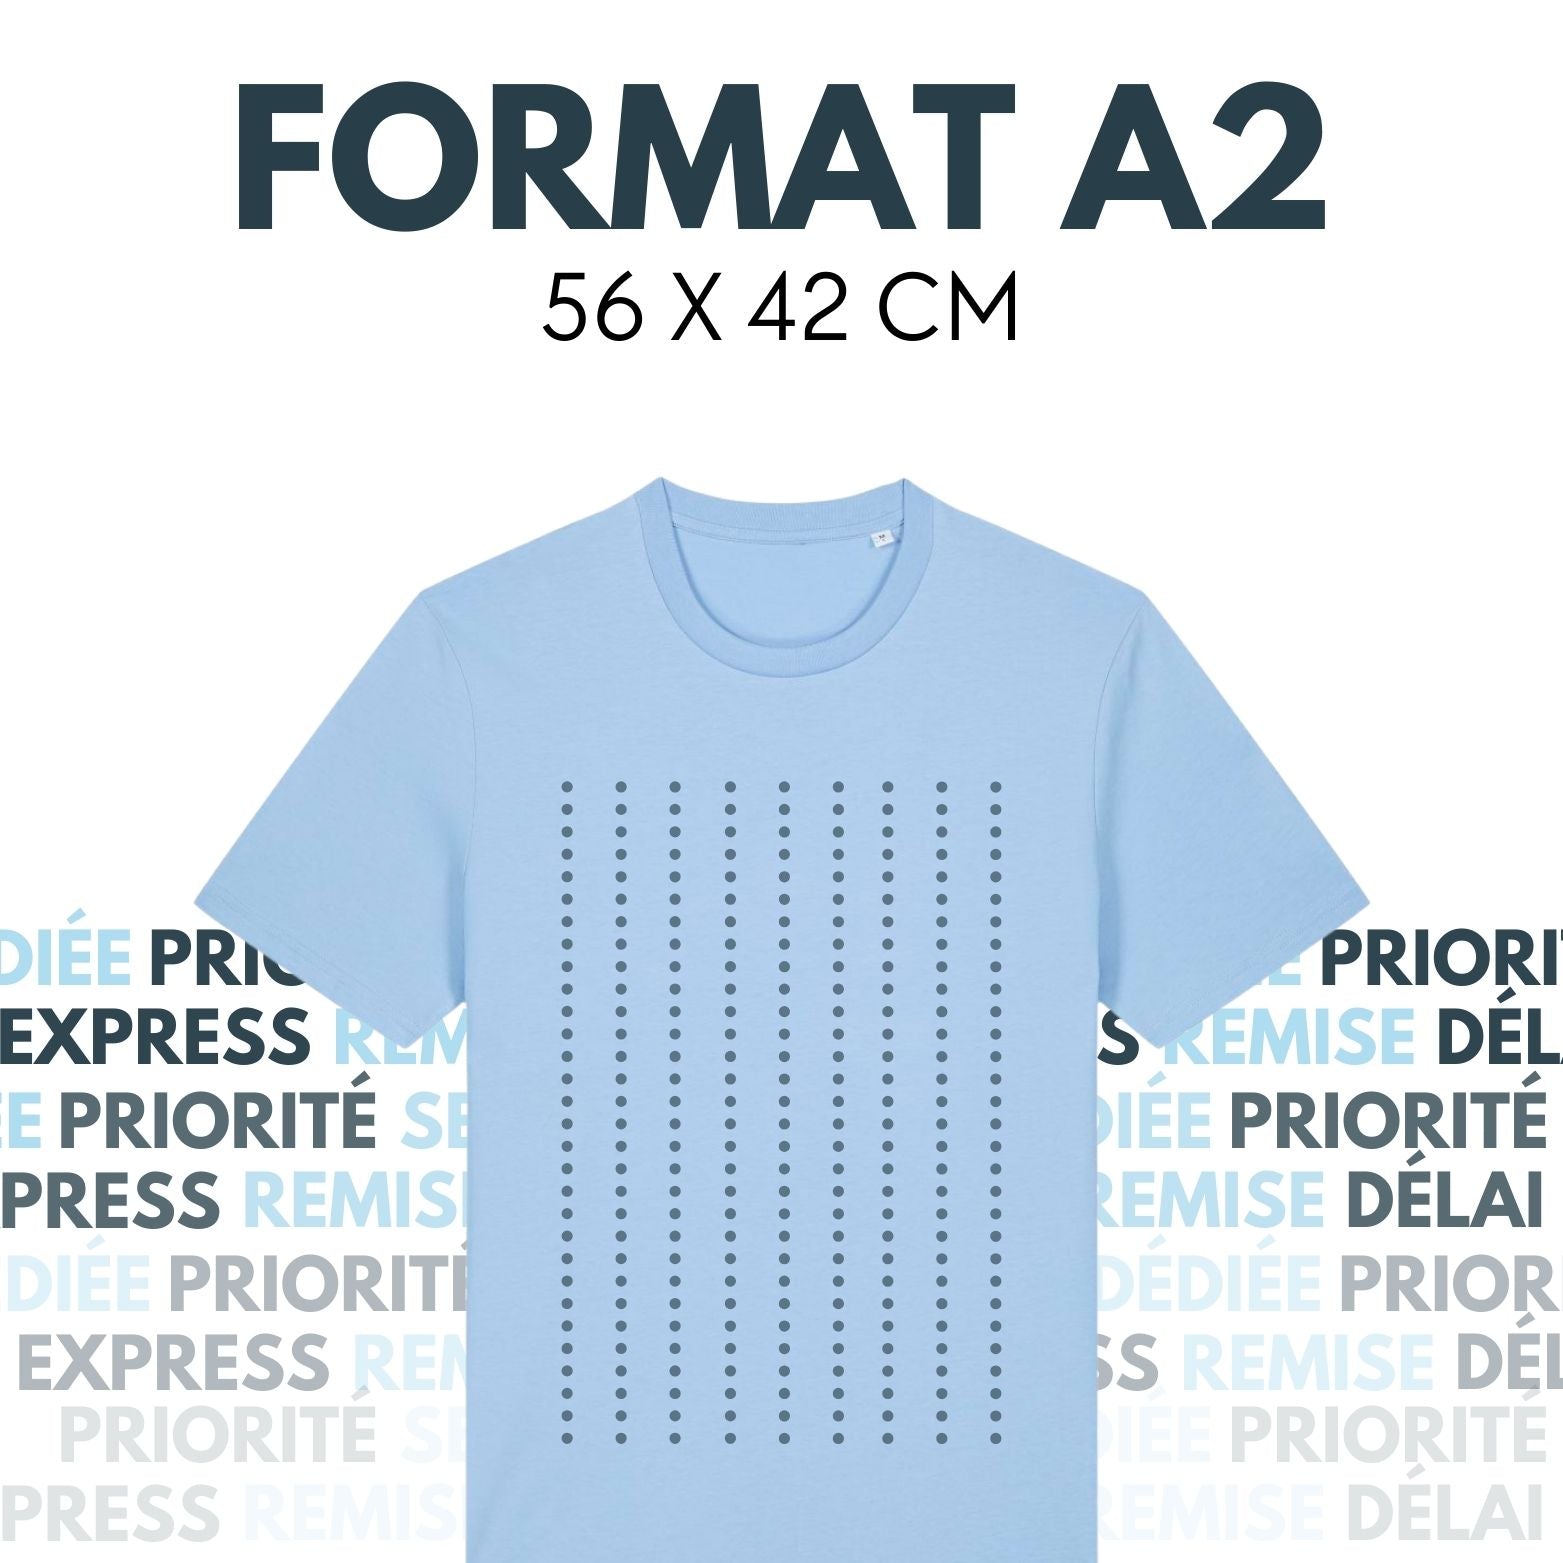 FORMAT A2 - Feuille de transfert DTF